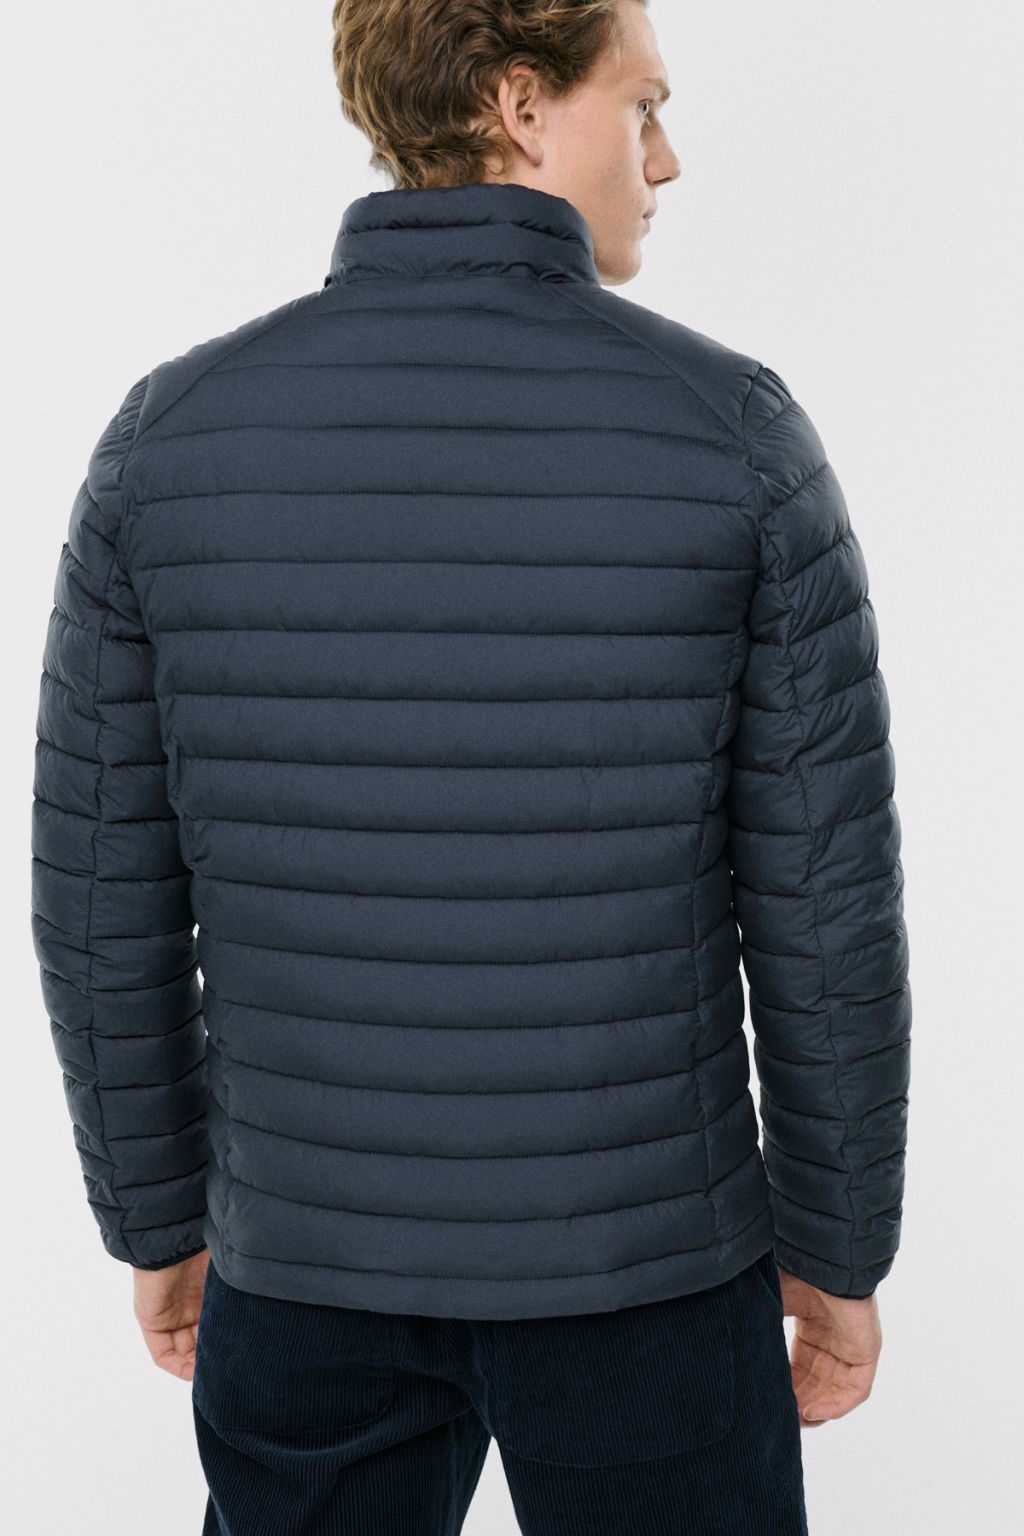 Beretalf Jacket Man Asphalt XL